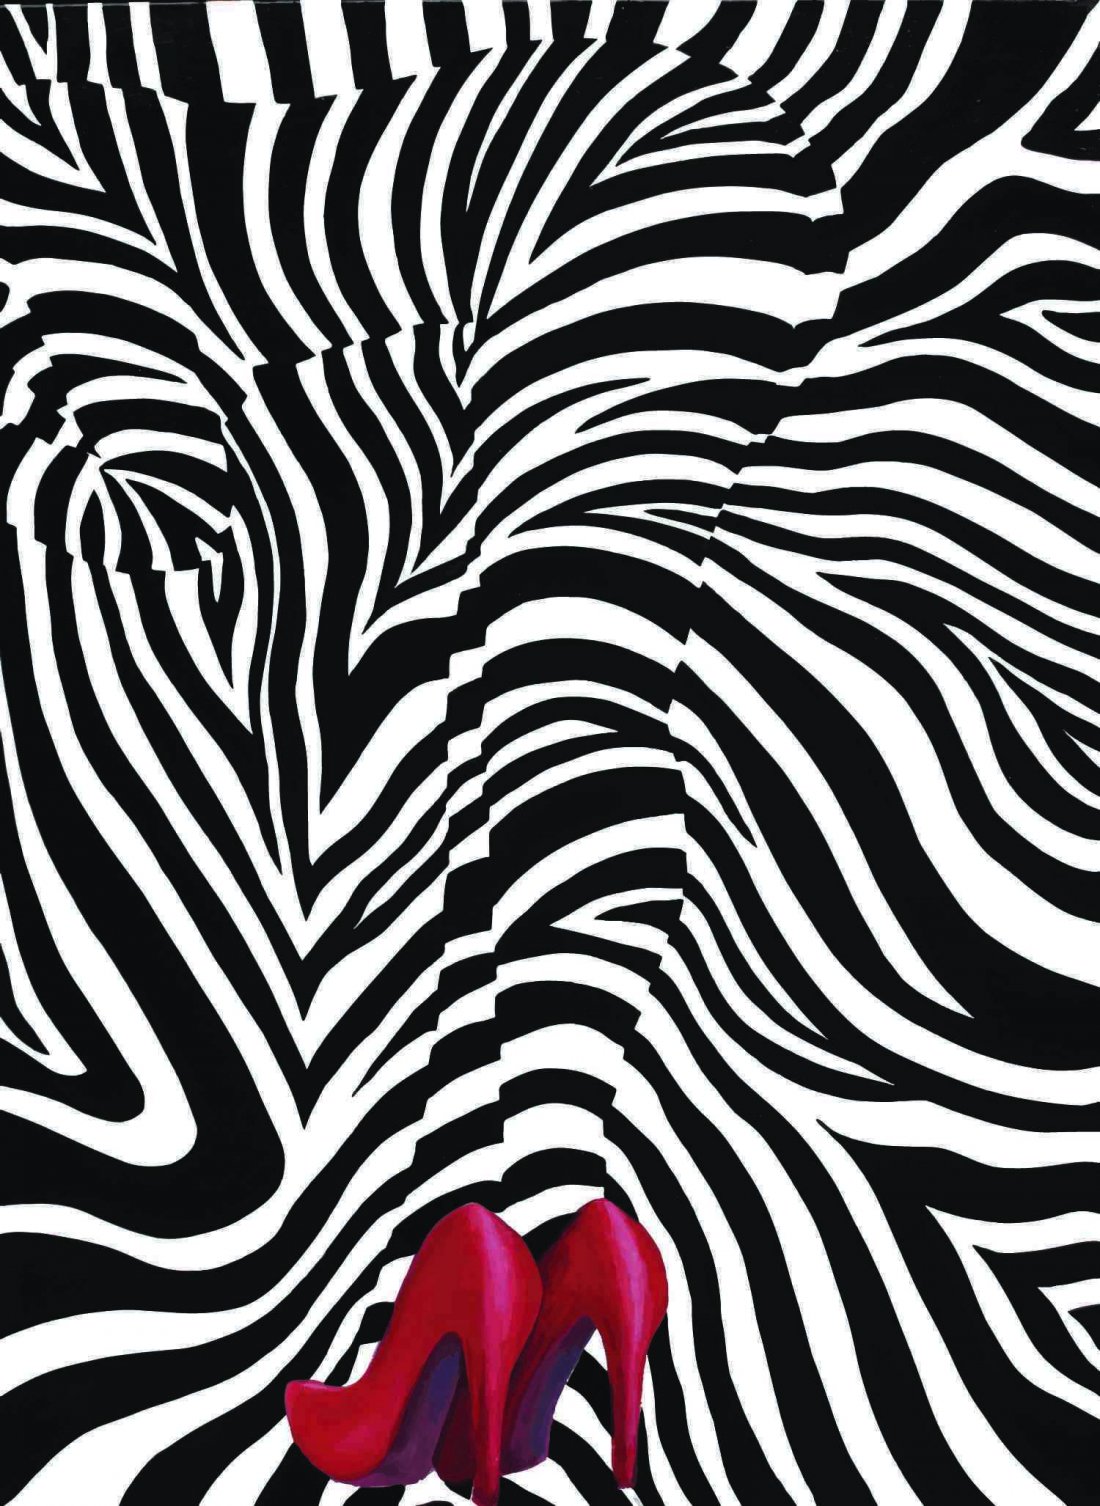 Zebra Love by Blake Emory